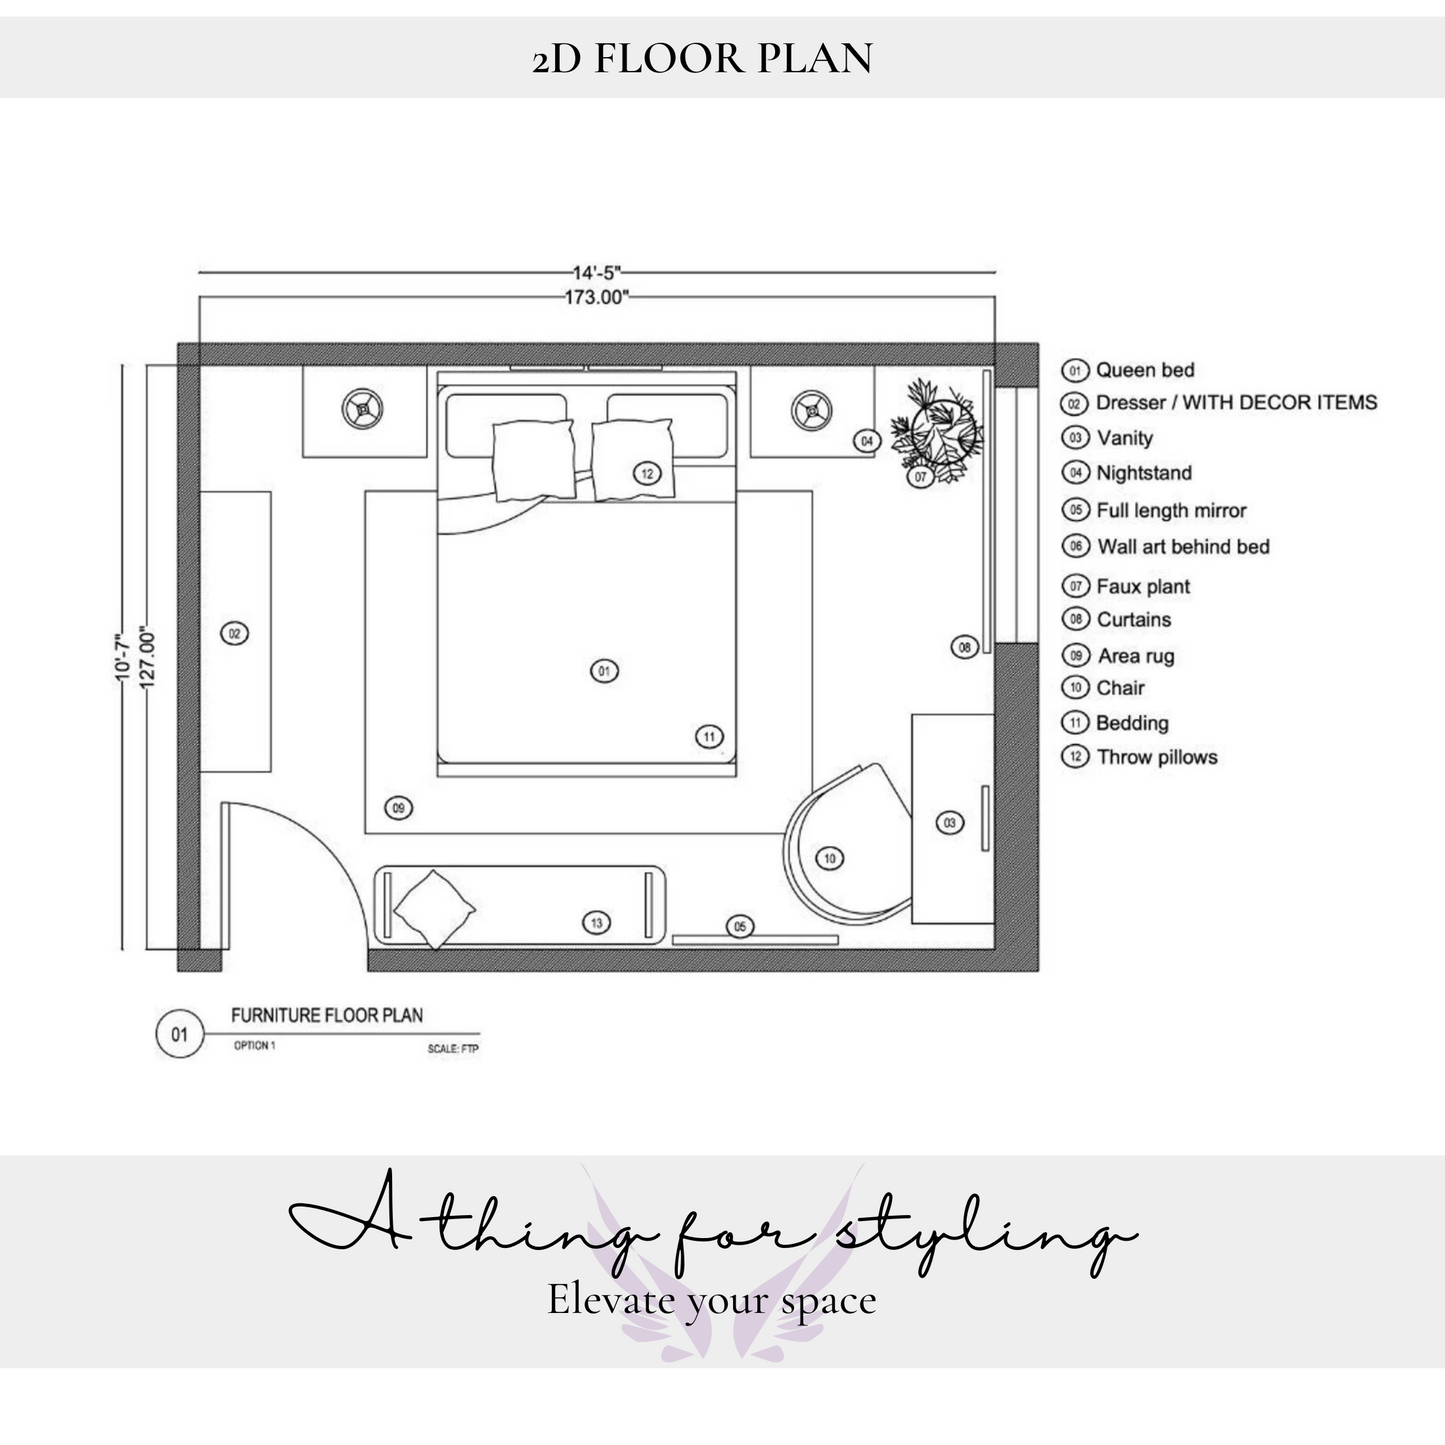 2D Room Floor plan - 1 Room Space Planning.